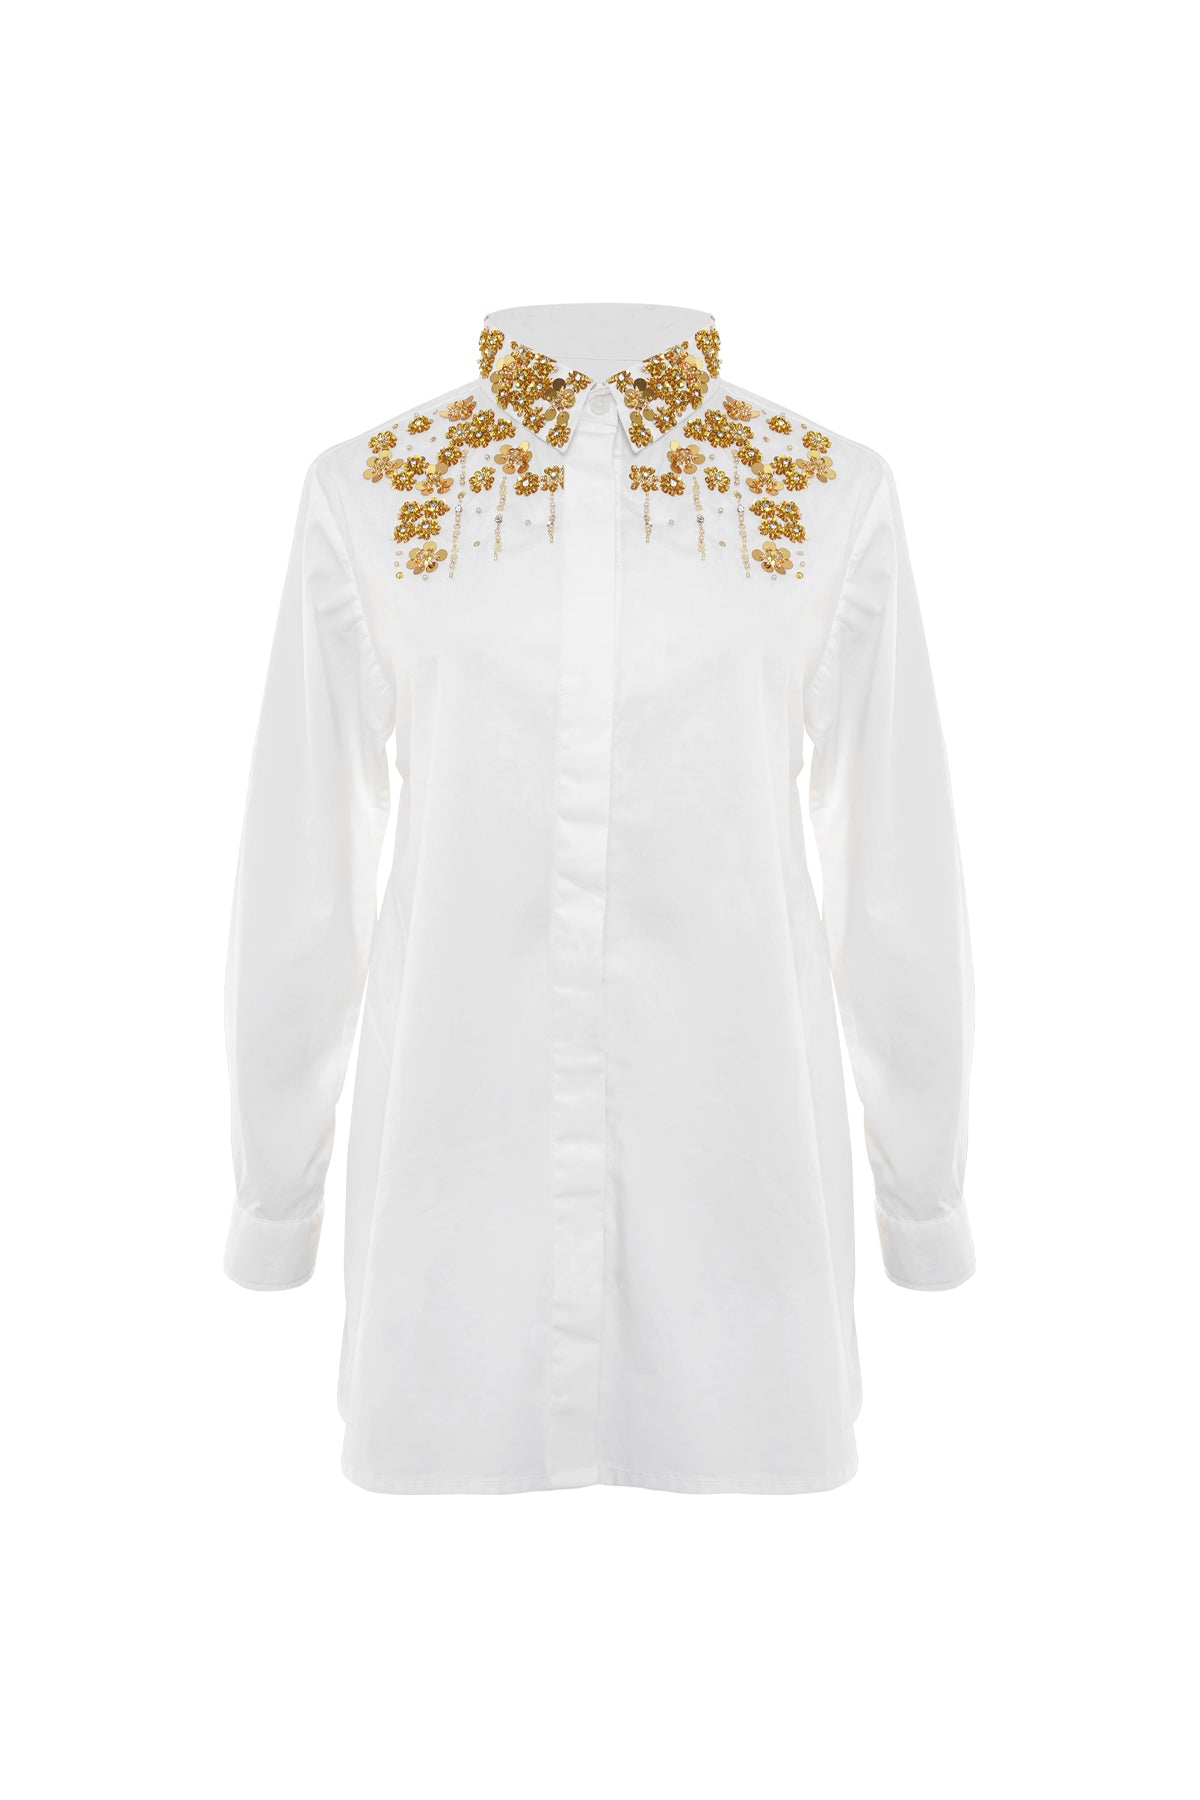 Kenna Beaded Shirt - White